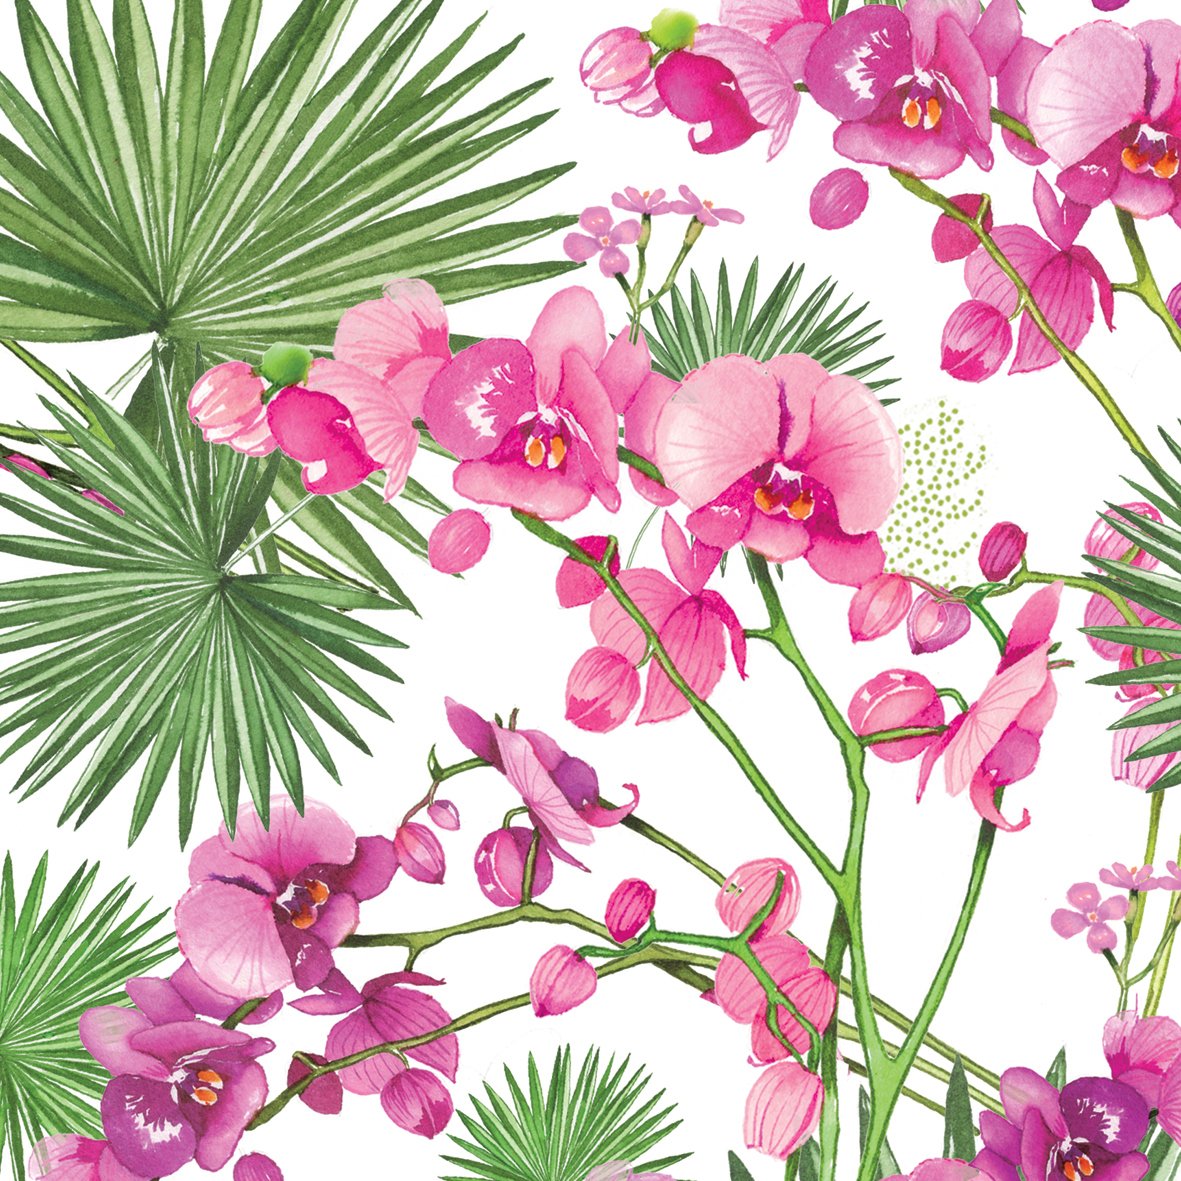 Orchids & Palms 33x33 cm